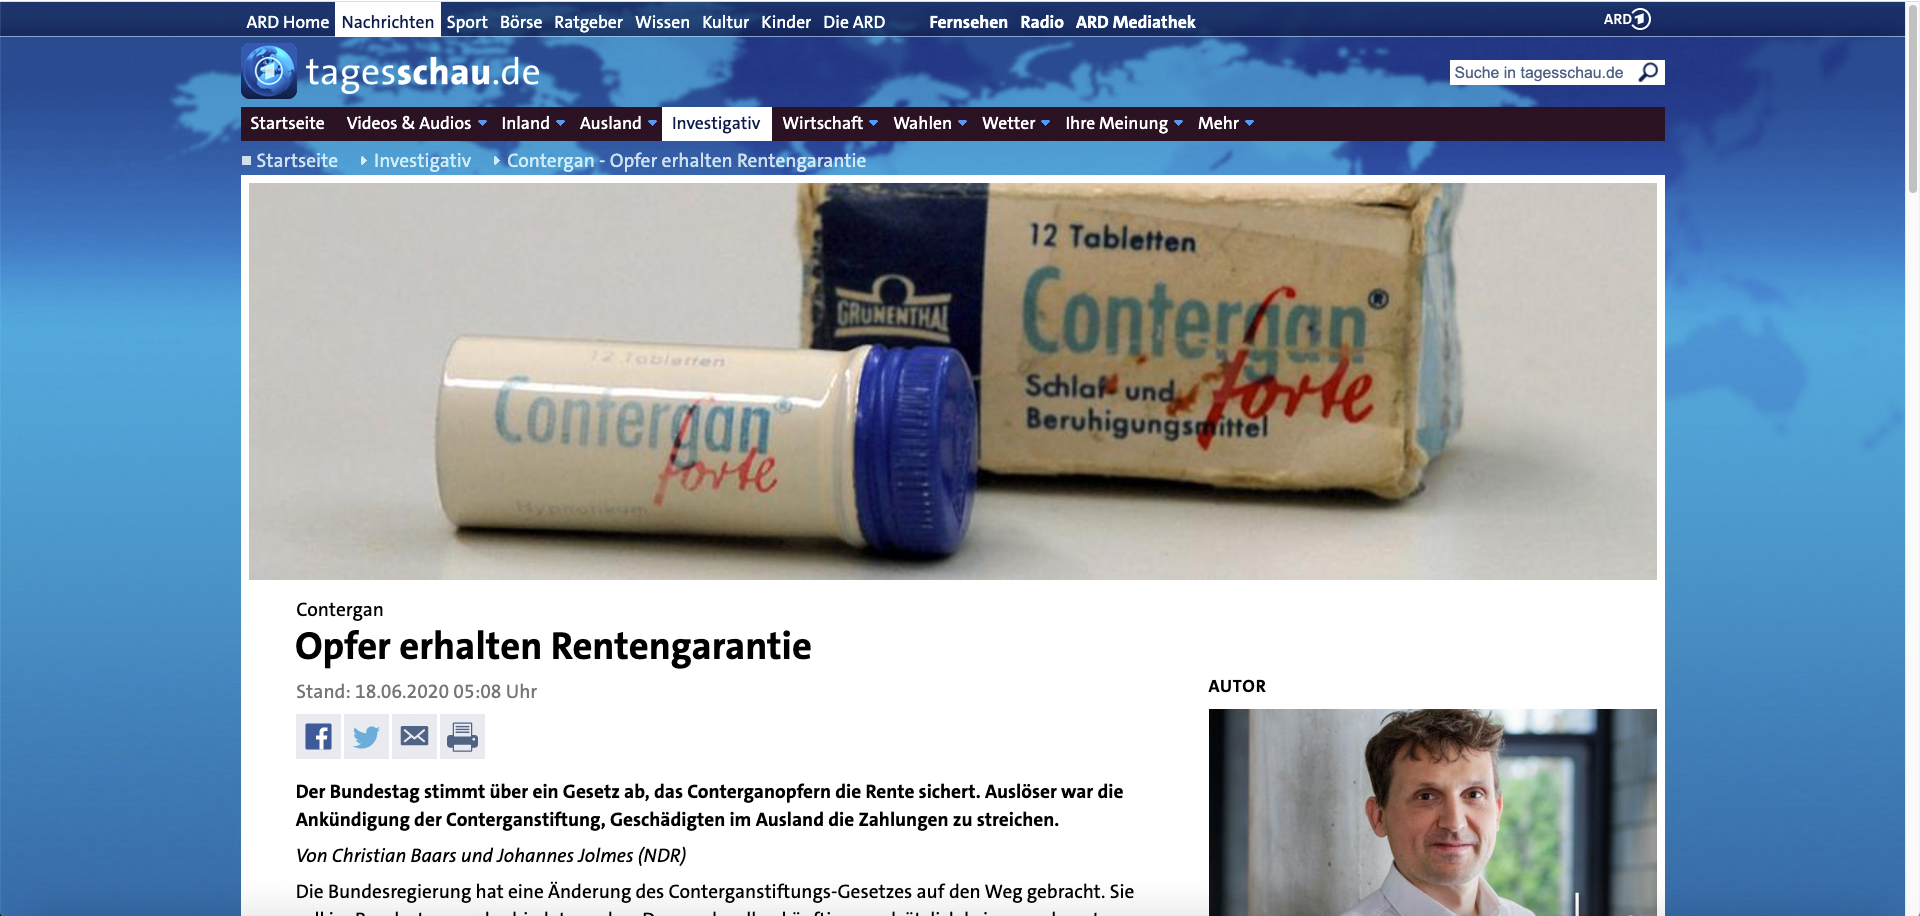 Das Bild zeigt einen Artikelausschnitt bei tagesschau.de zum Thema Conterganrente.